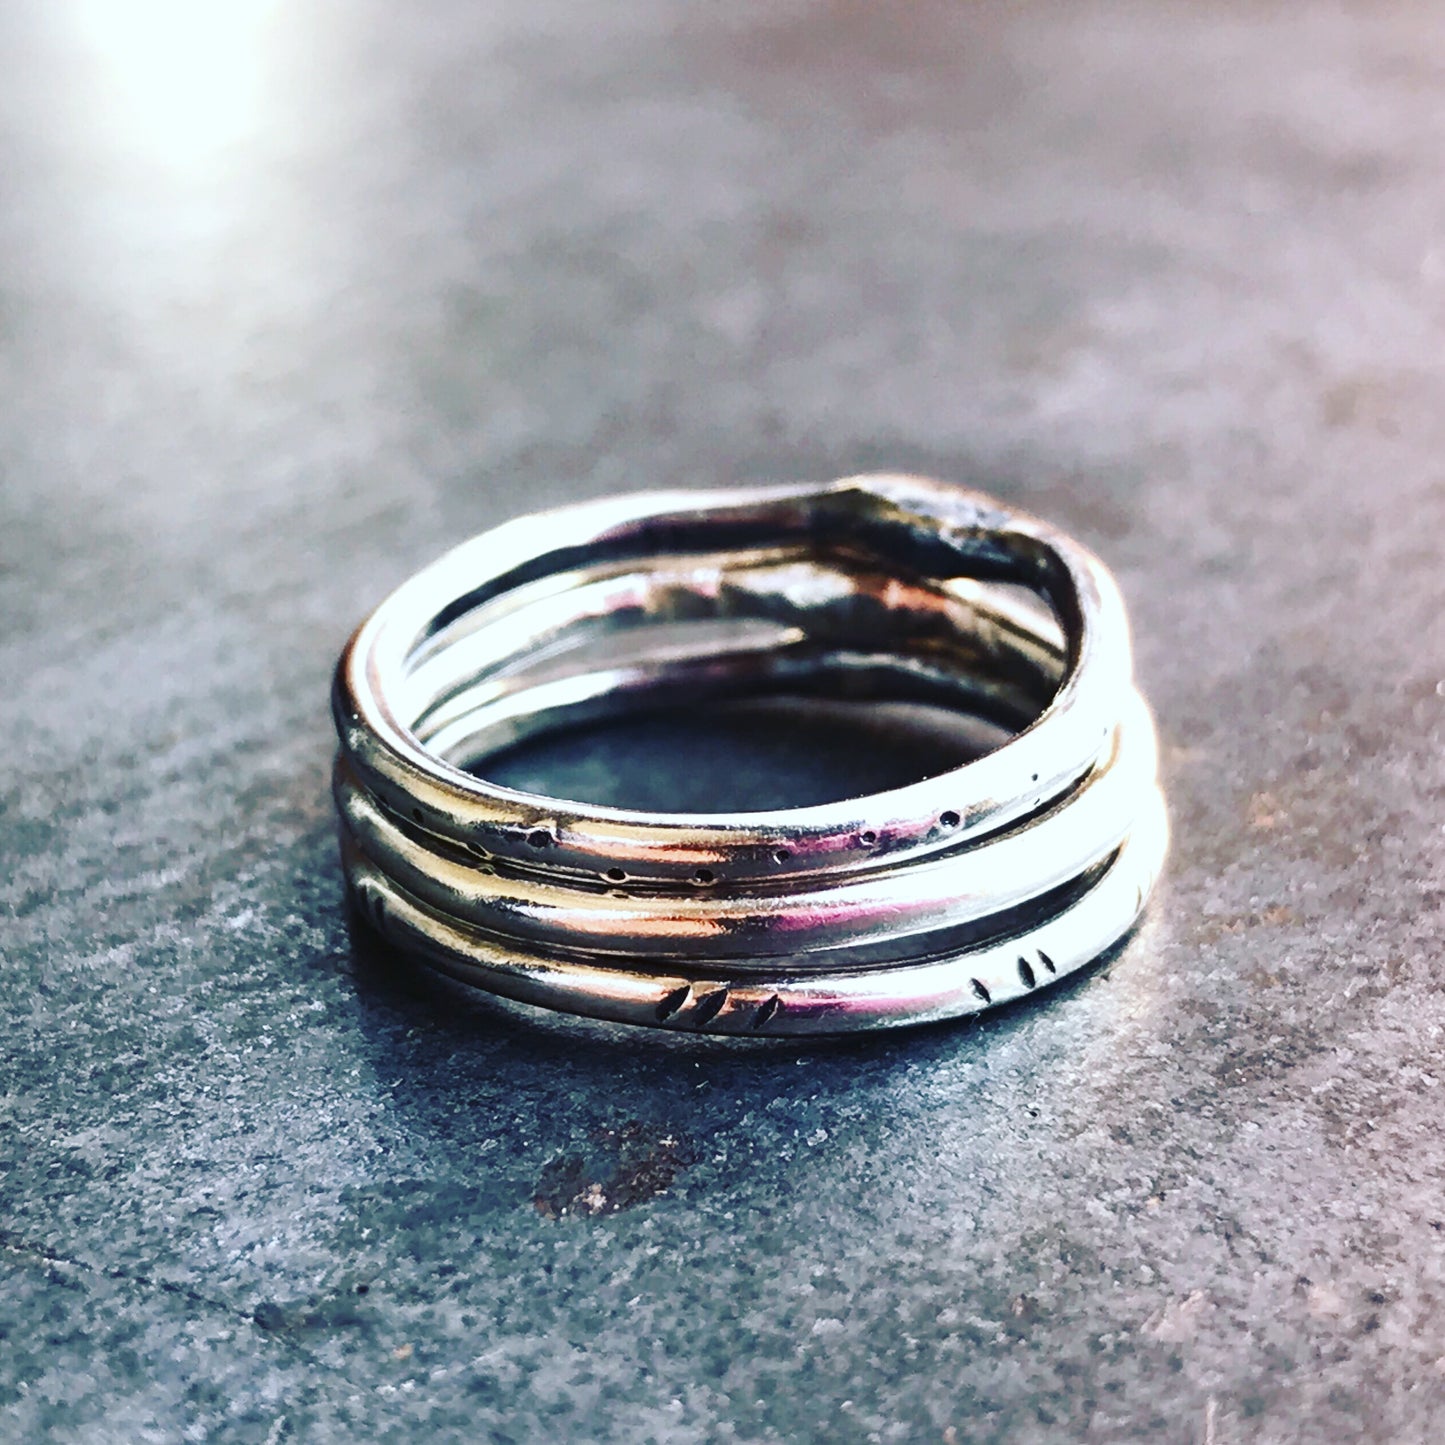 Stacker rings